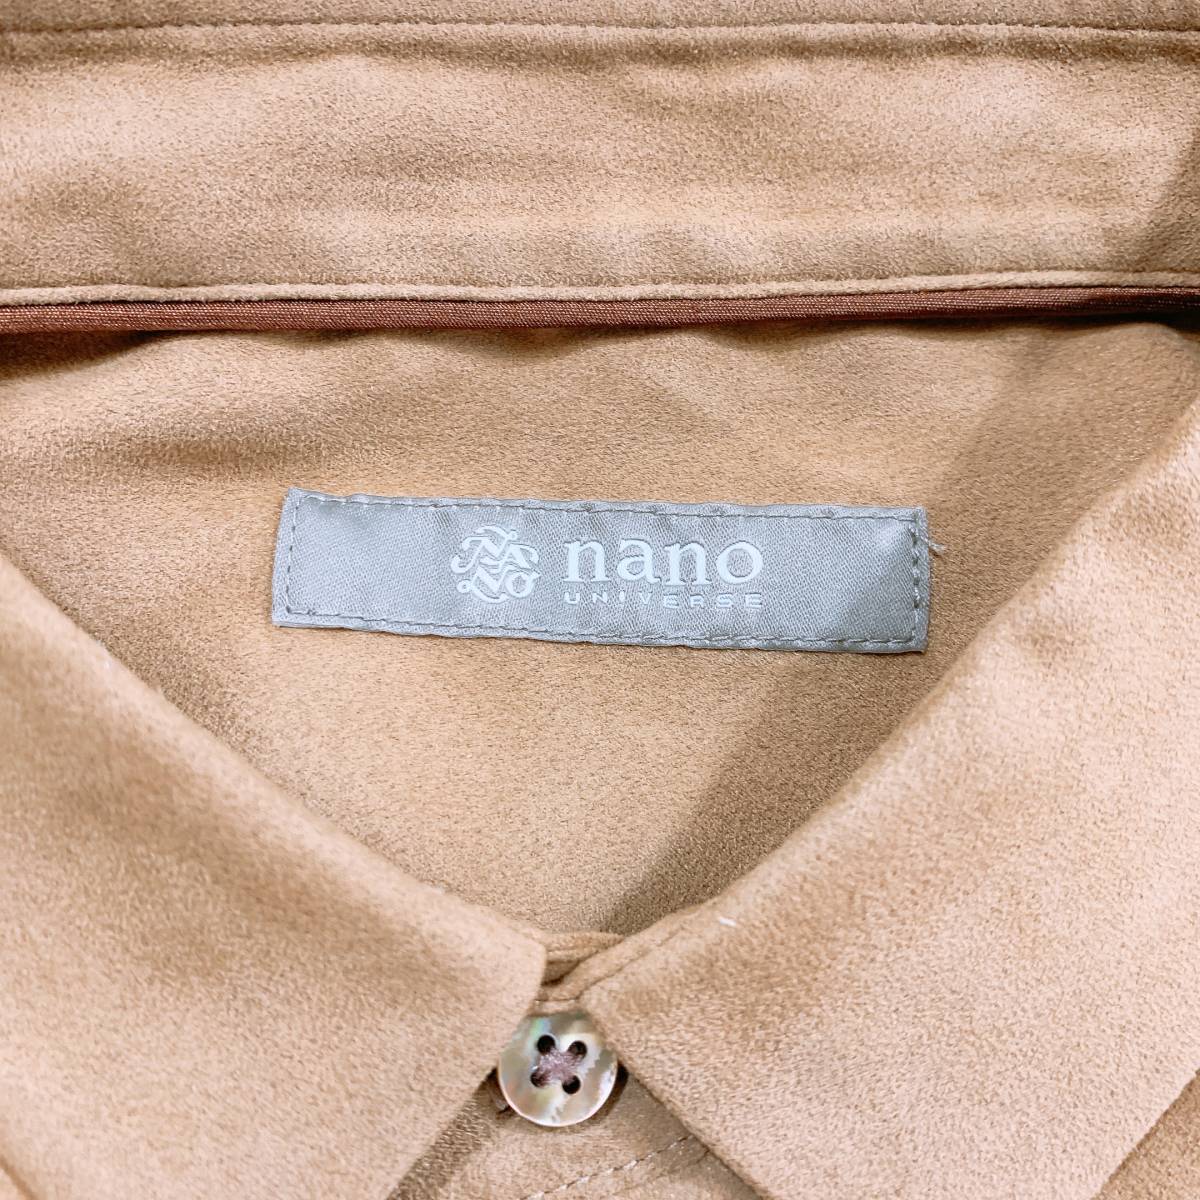 【15775】 未使用品 nano UNIVERSE ナノユニバース 長袖シャツ スウェード調 上品 高級感 ブランド S メンズ 男性